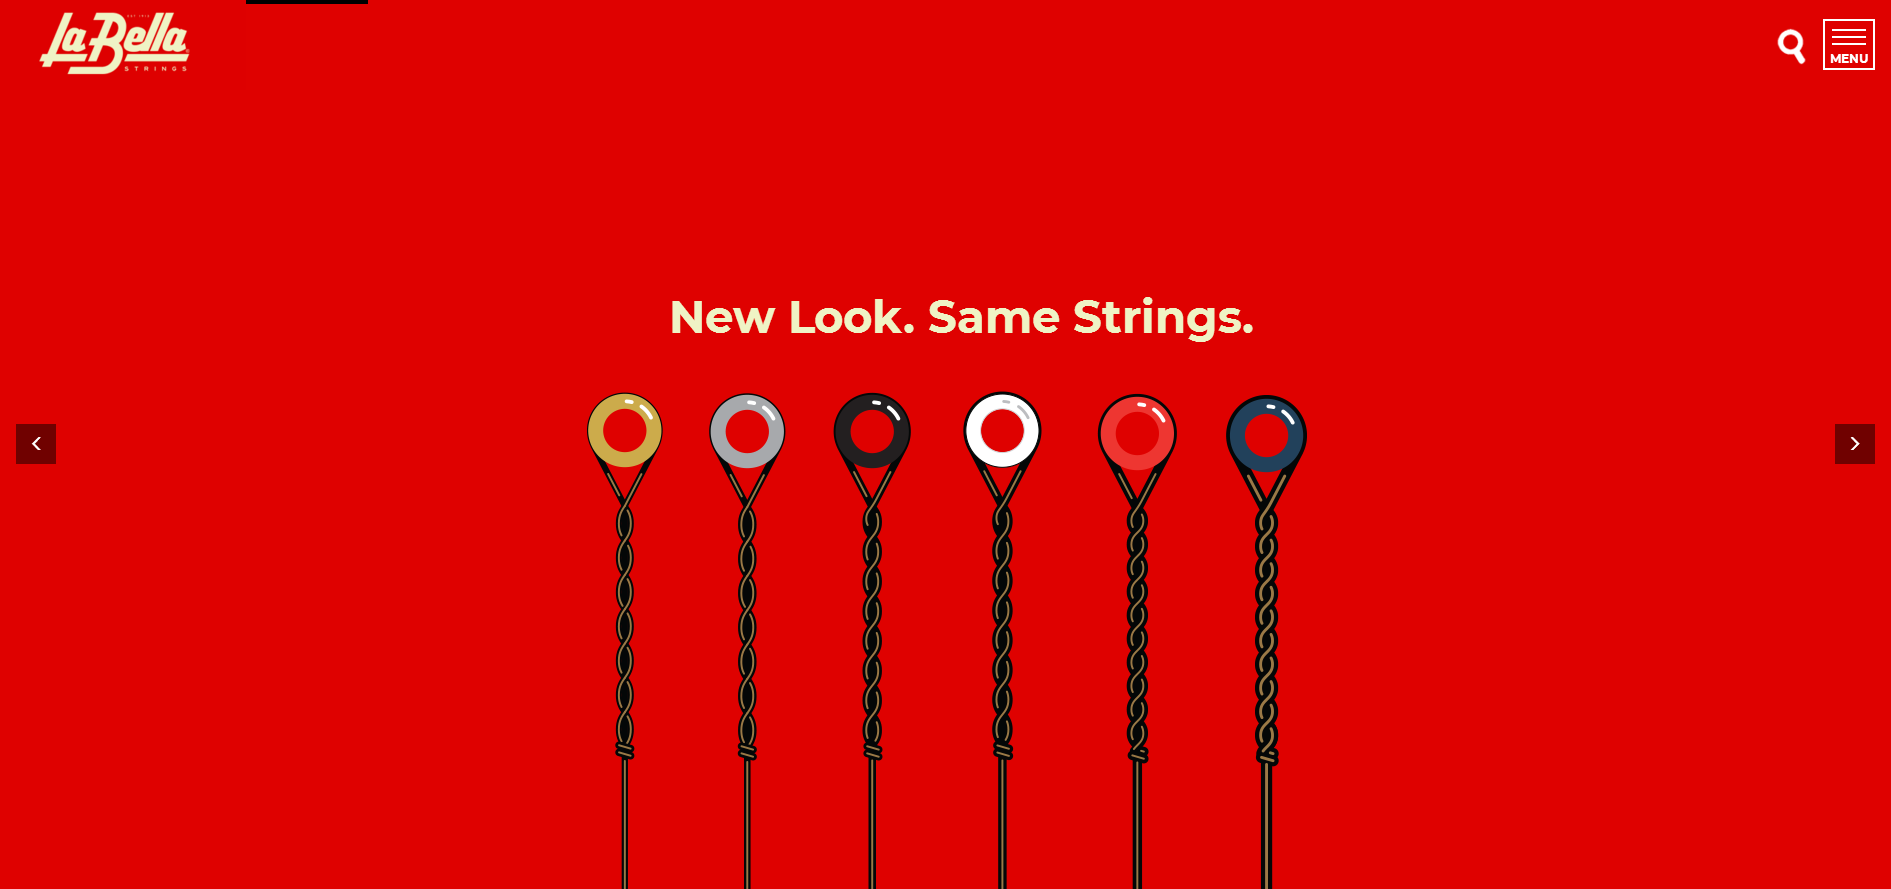 历史悠久的著名琴弦品牌logo更新